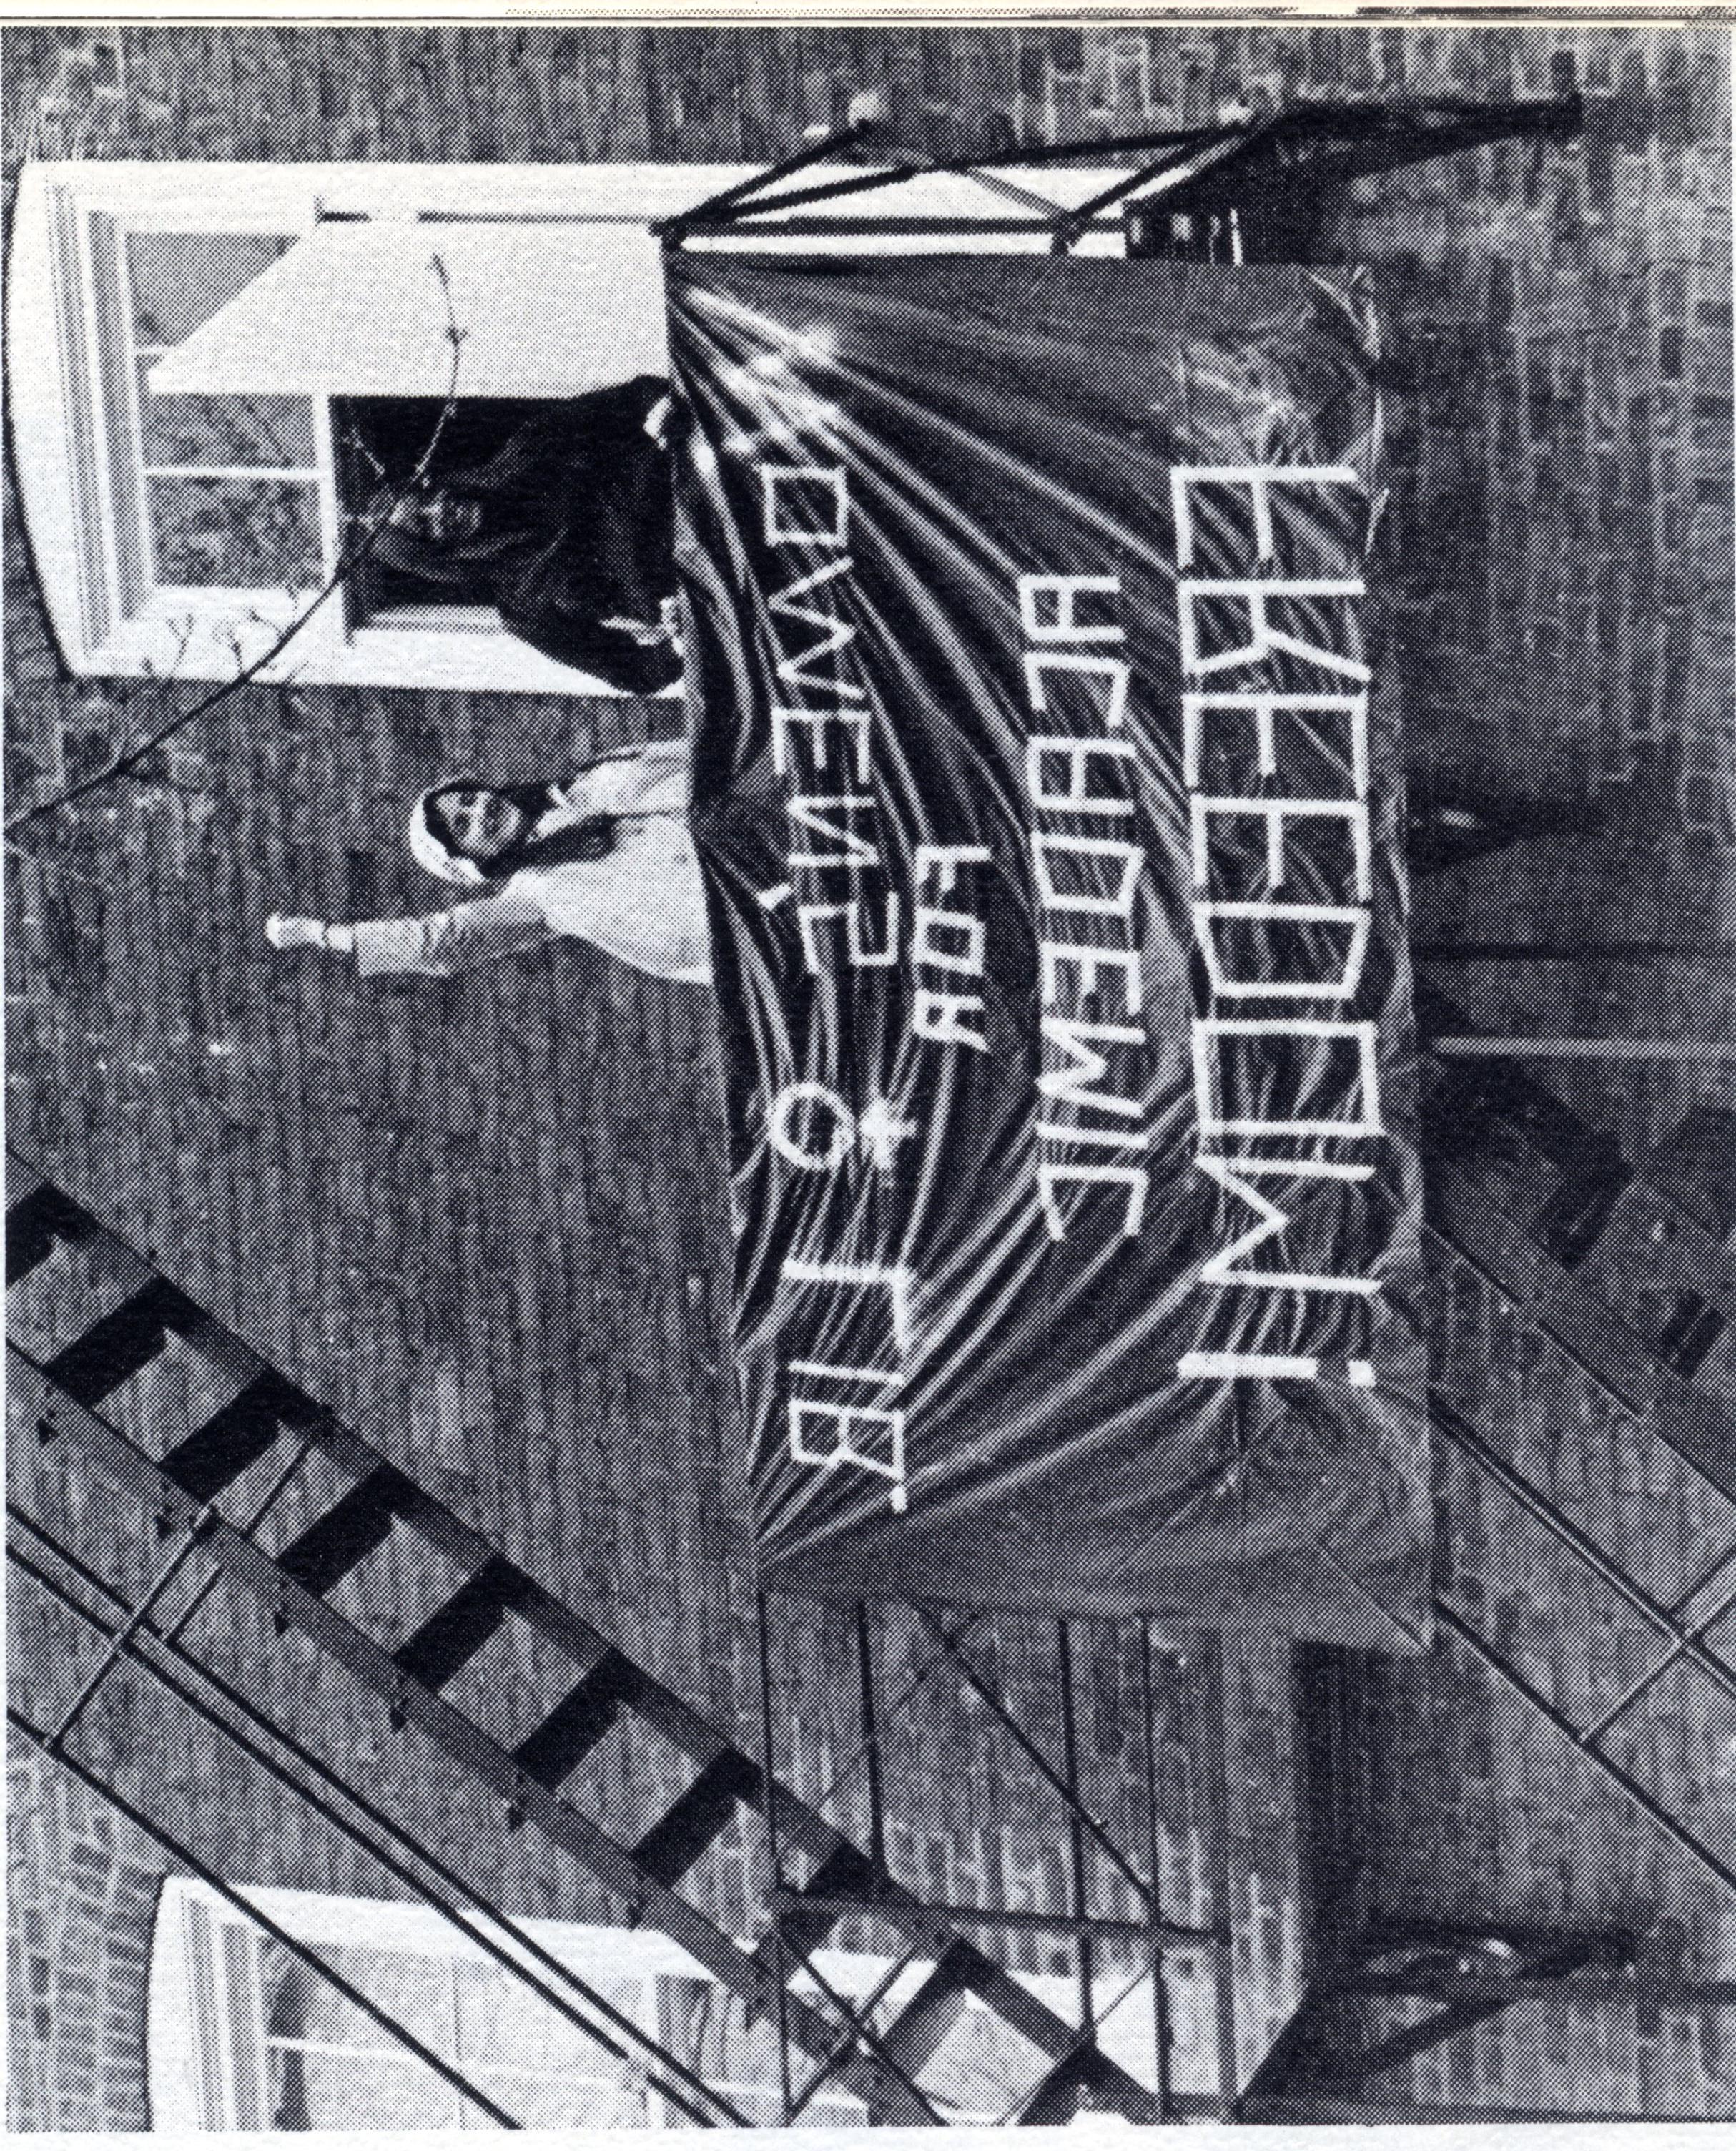 Academic freedom protest, 1970